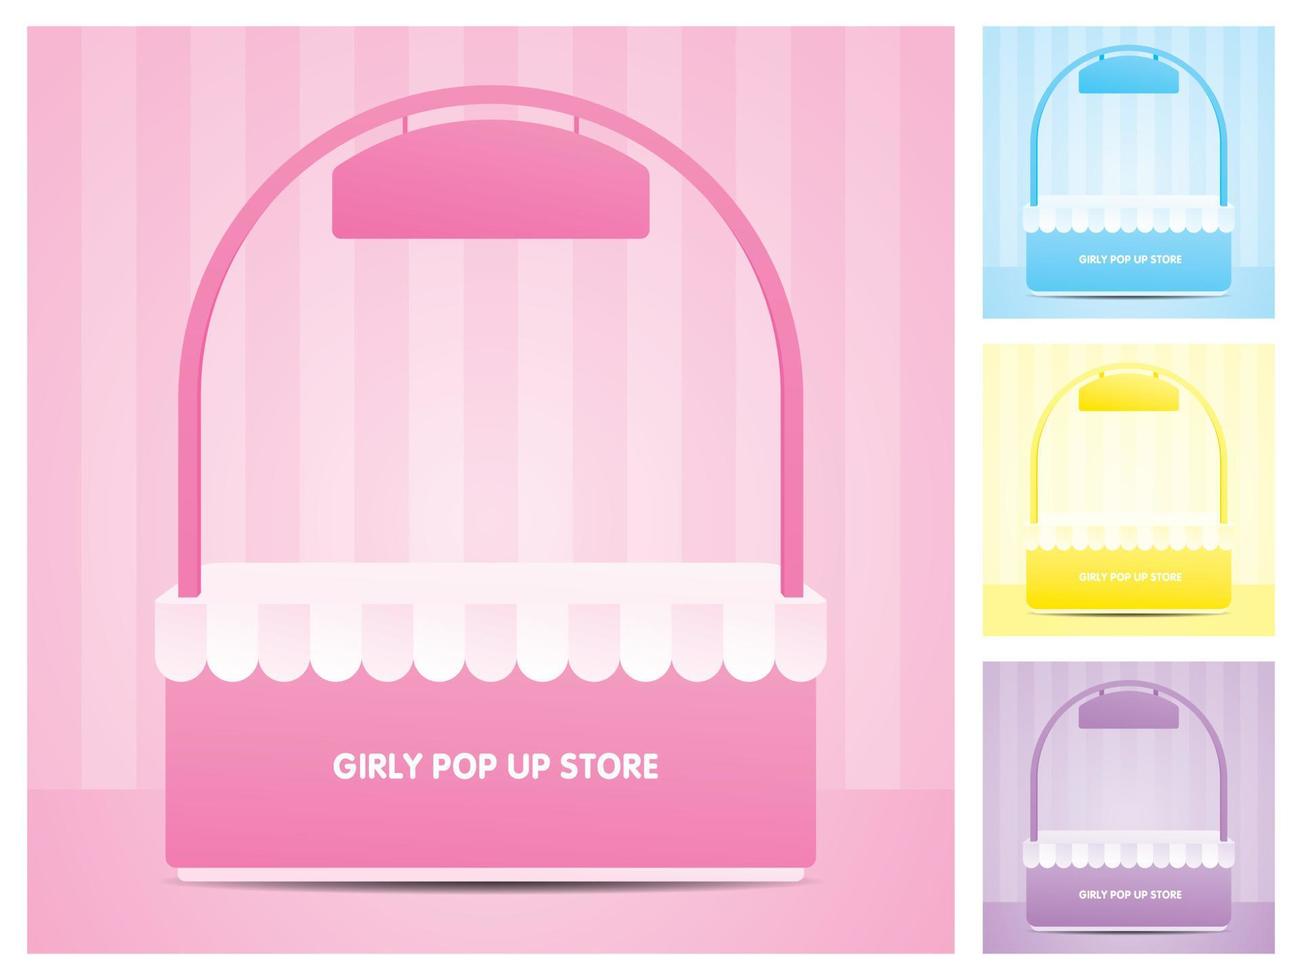 negozio pop-up girly con arco e segno di sospensione illustrazione 3d collezione vettoriale su scena di parete a strisce pastello